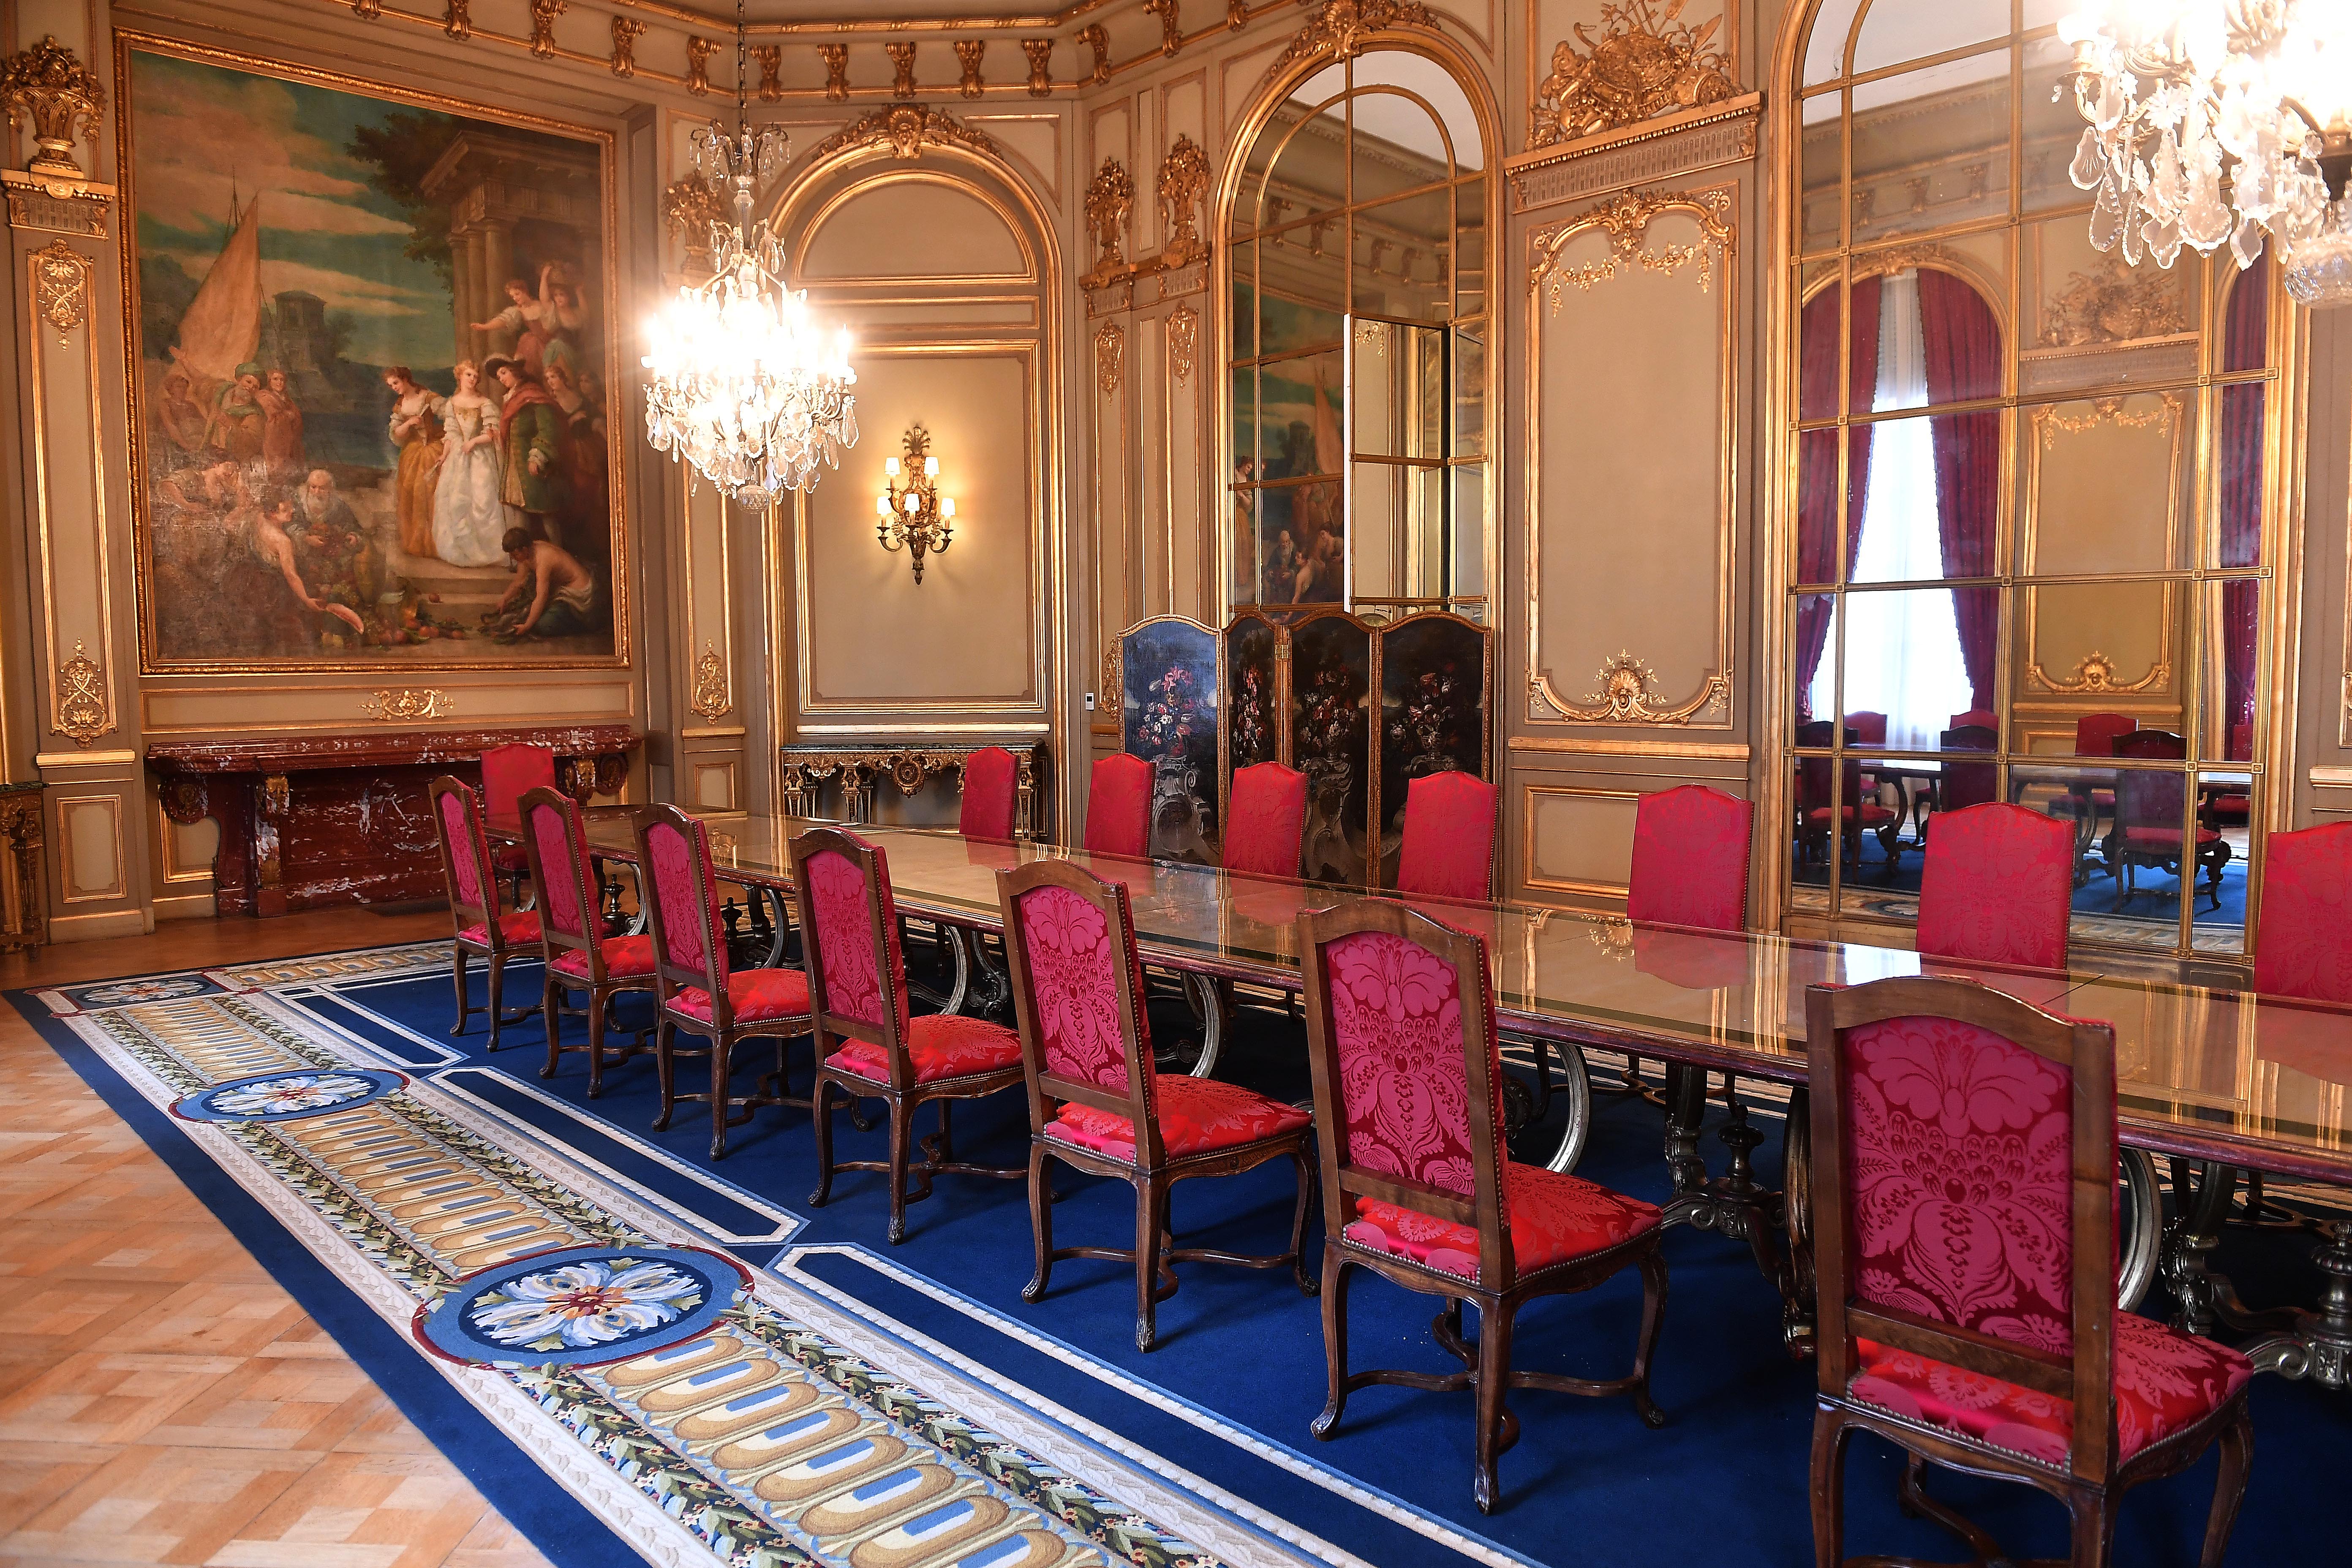 El comedor de Estado, la sala más fastuosa del Palacio Bosch 